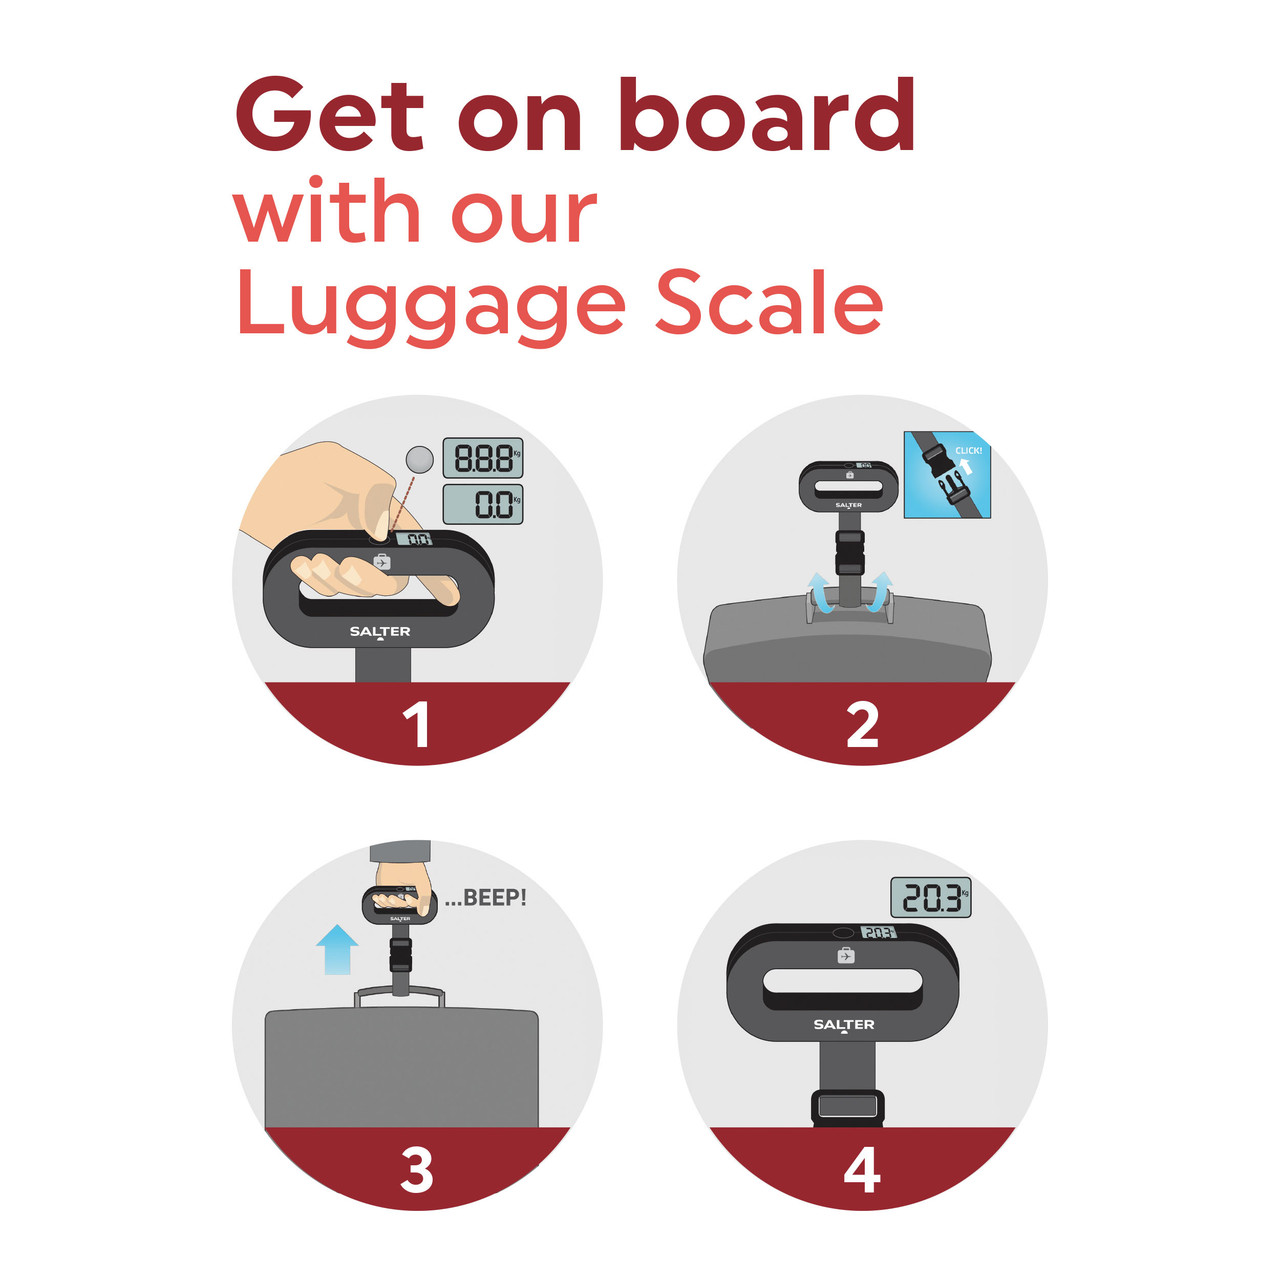 Digital Luggage Scale - Lee Valley Tools